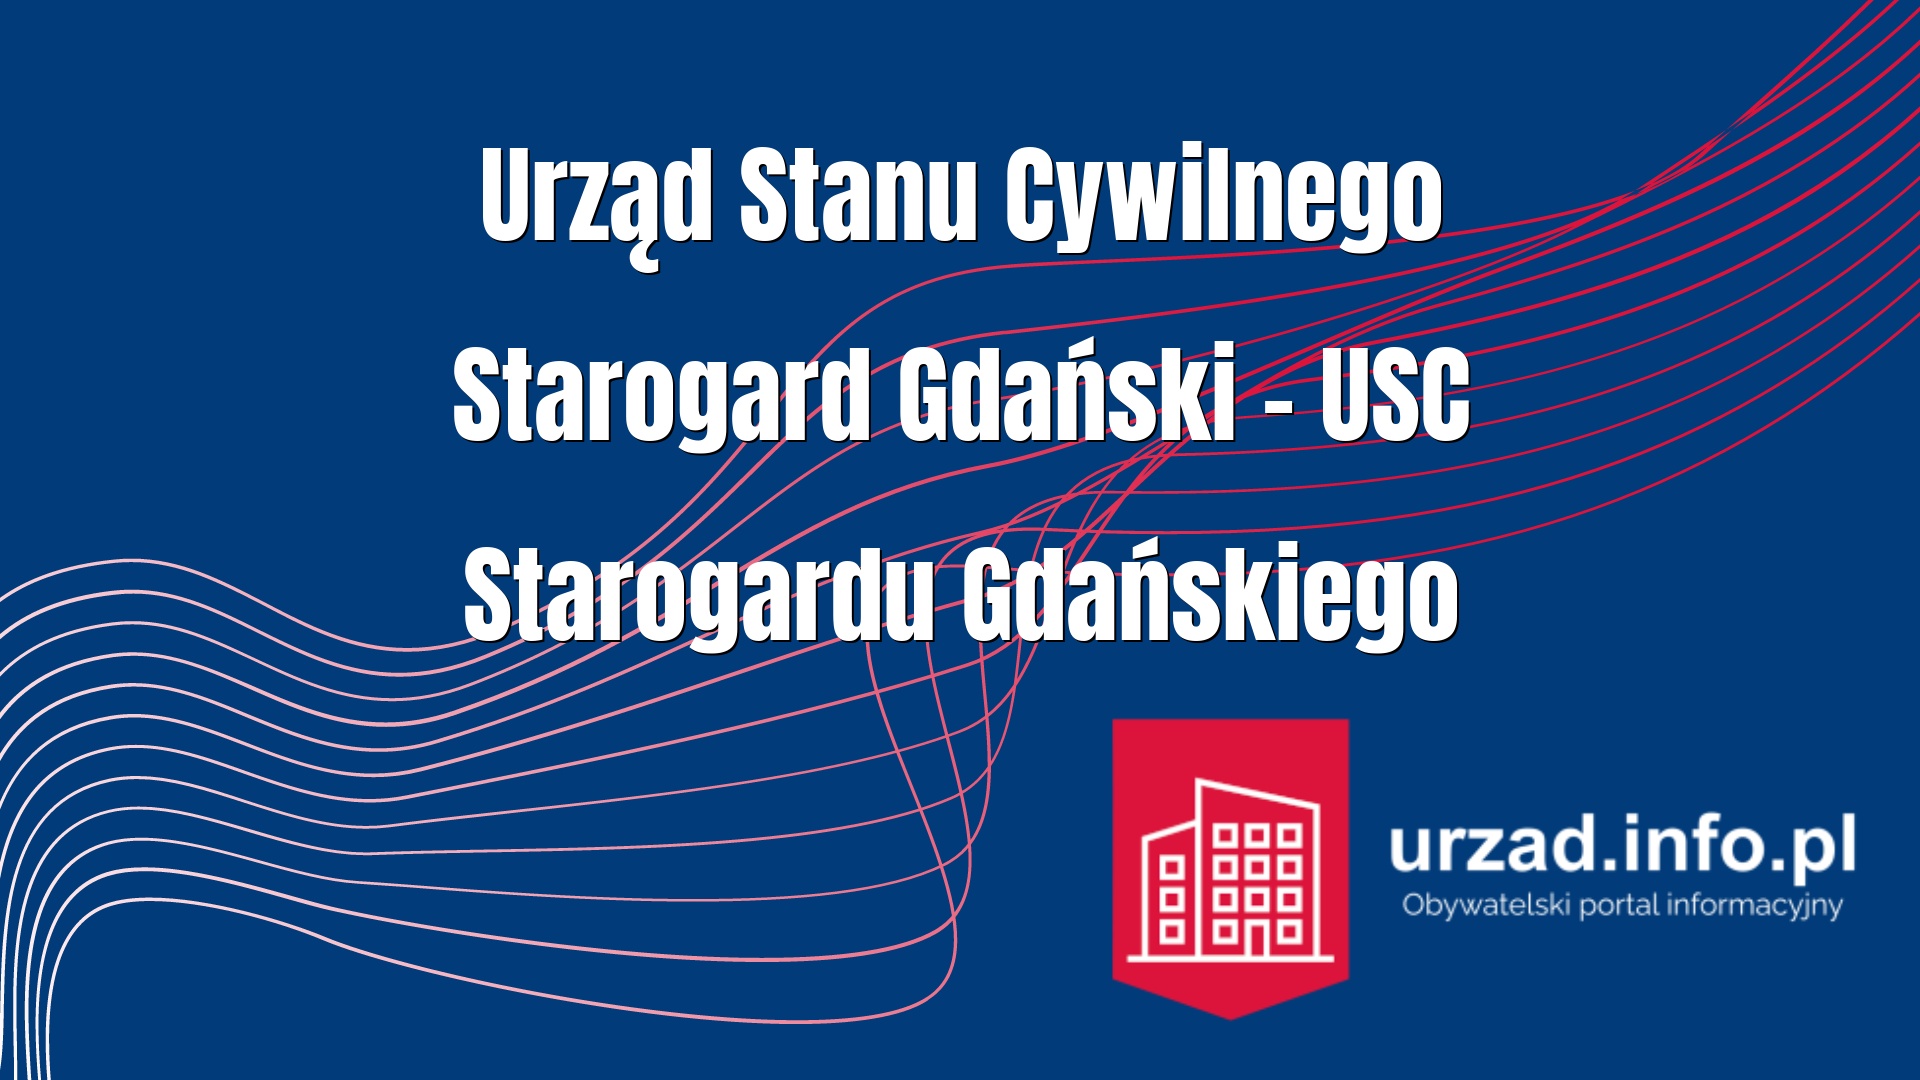 Urząd Stanu Cywilnego Starogard Gdański – USC Starogardu Gdańskiego